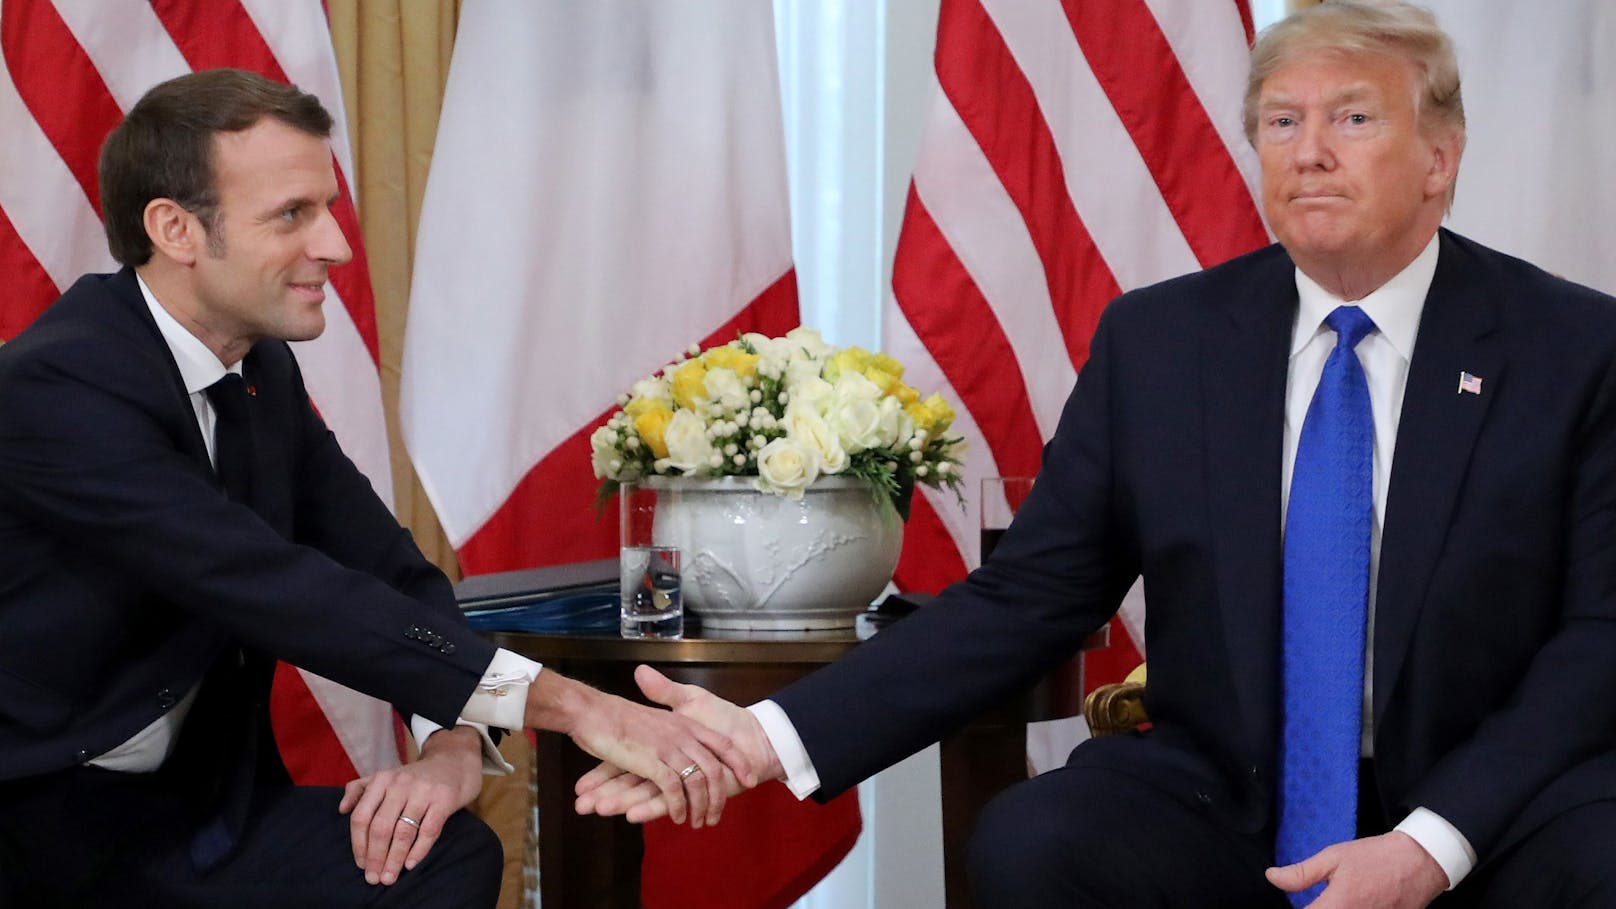 Macron und Trump hatten nicht unbedingt das beste Verhältnis.